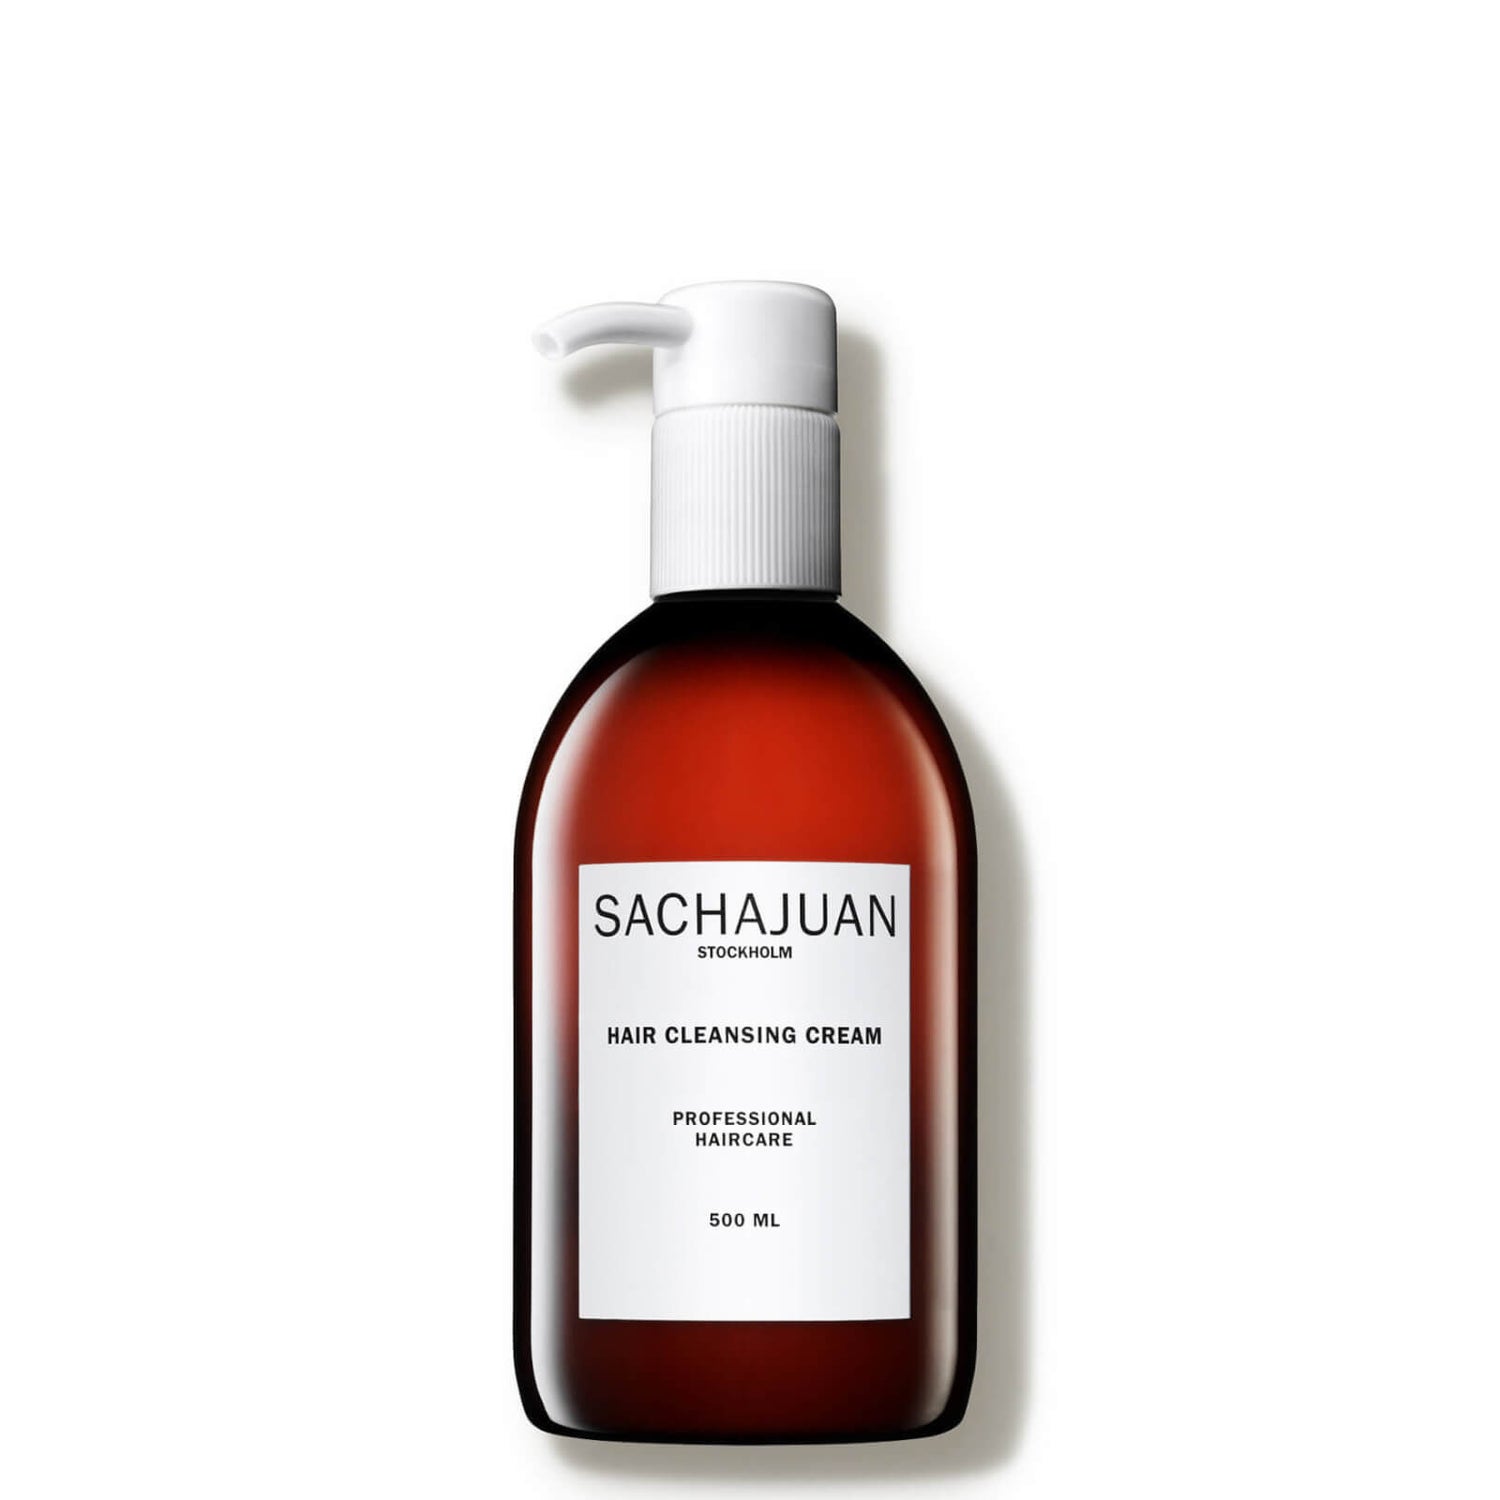 Crema limpiadora de pelo de Sachajuan 500 ml